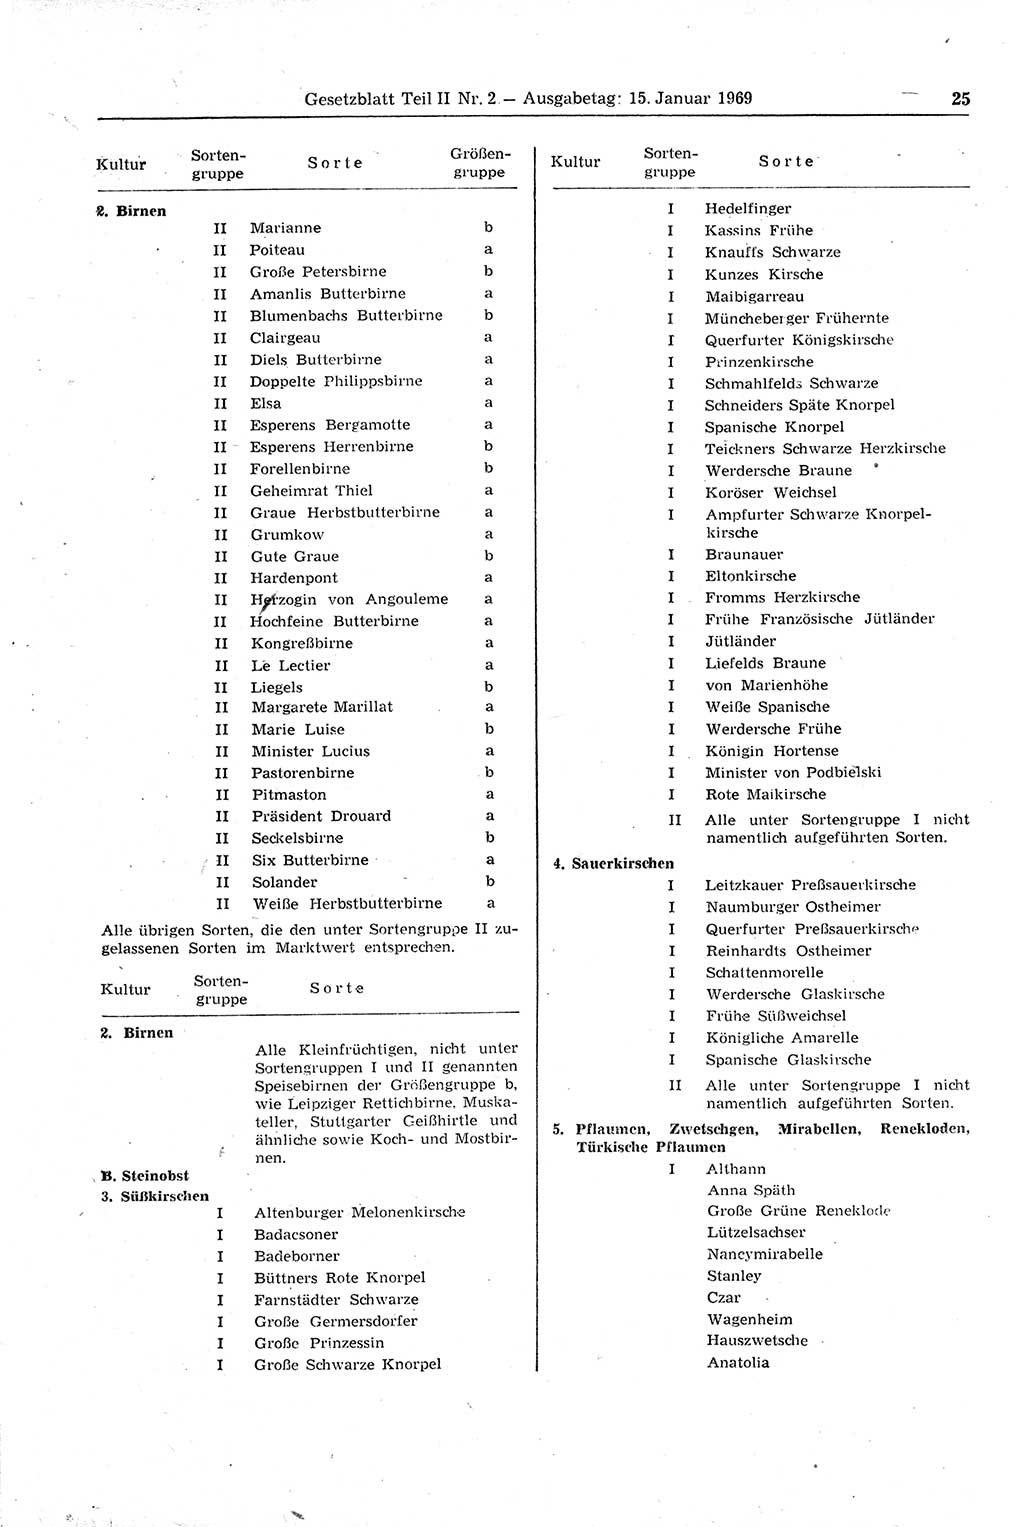 Gesetzblatt (GBl.) der Deutschen Demokratischen Republik (DDR) Teil ⅠⅠ 1969, Seite 25 (GBl. DDR ⅠⅠ 1969, S. 25)